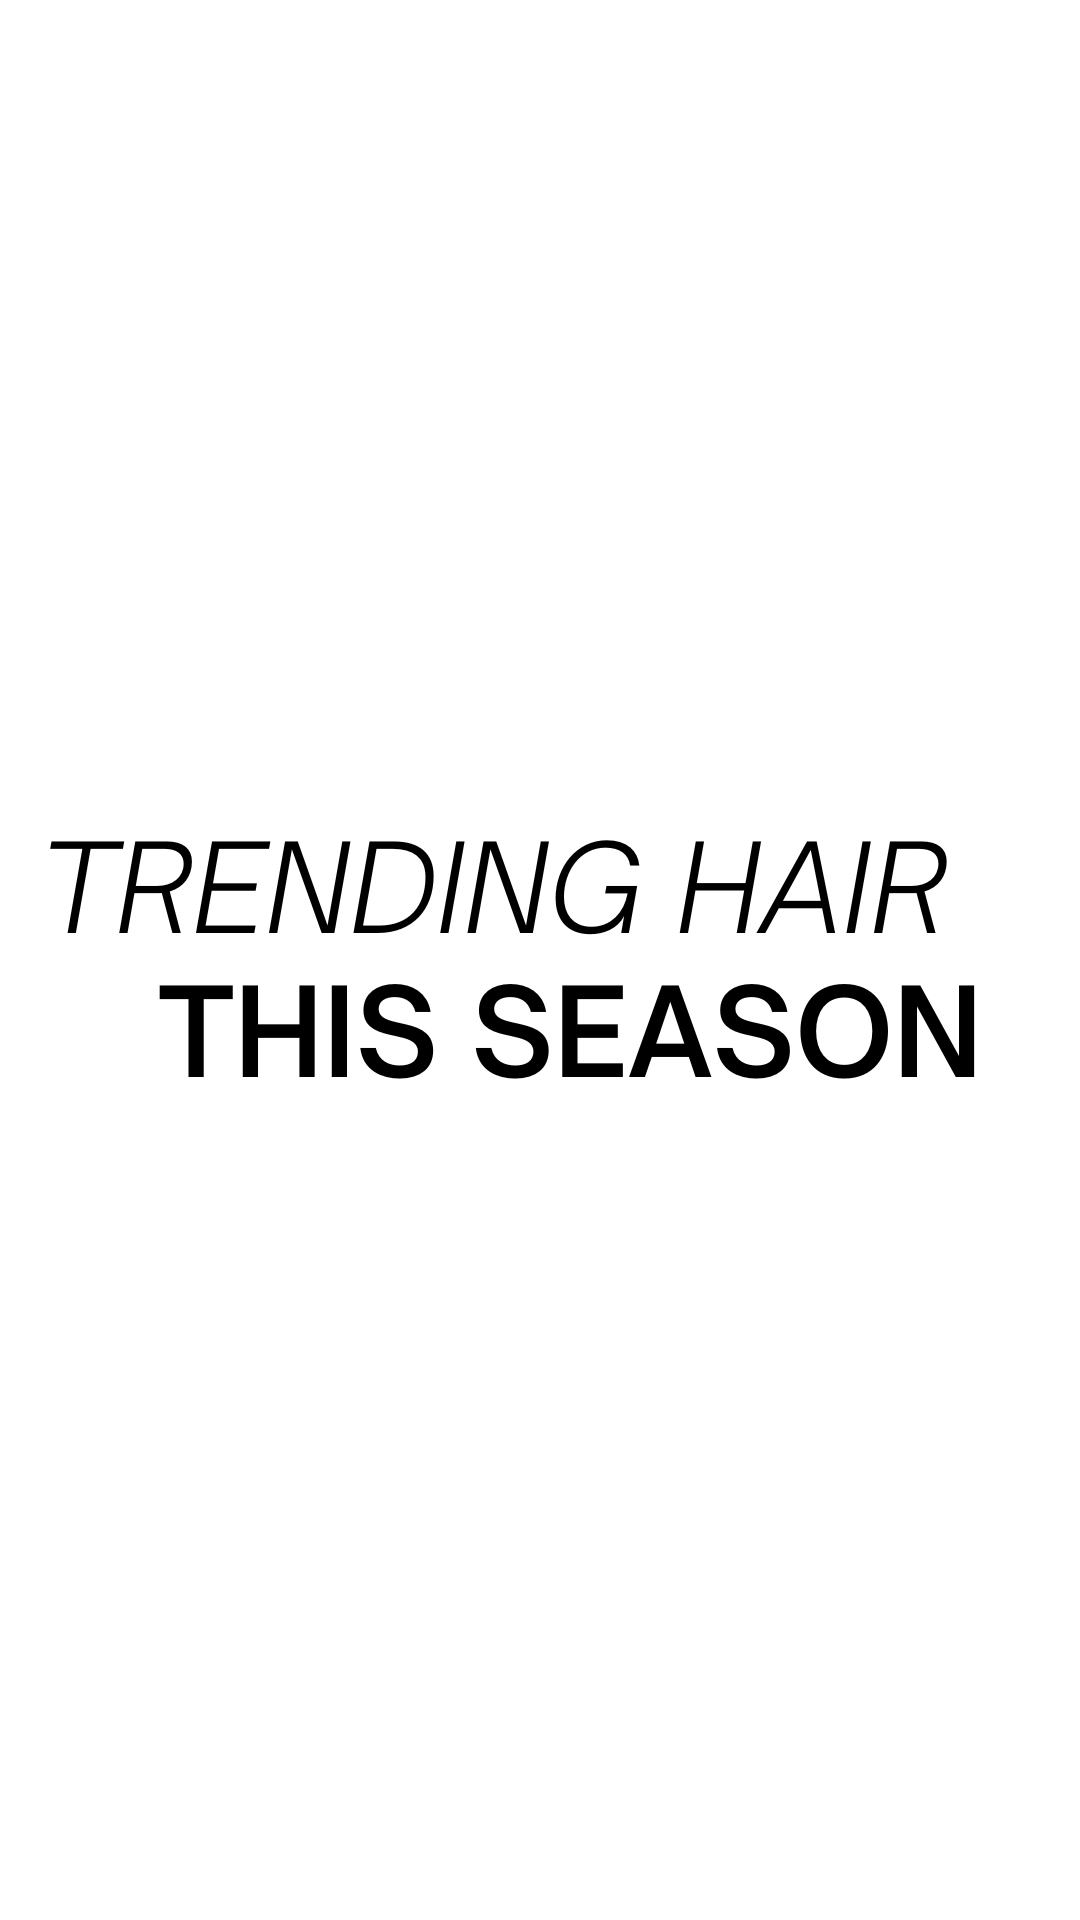 Trending hair for the change of season